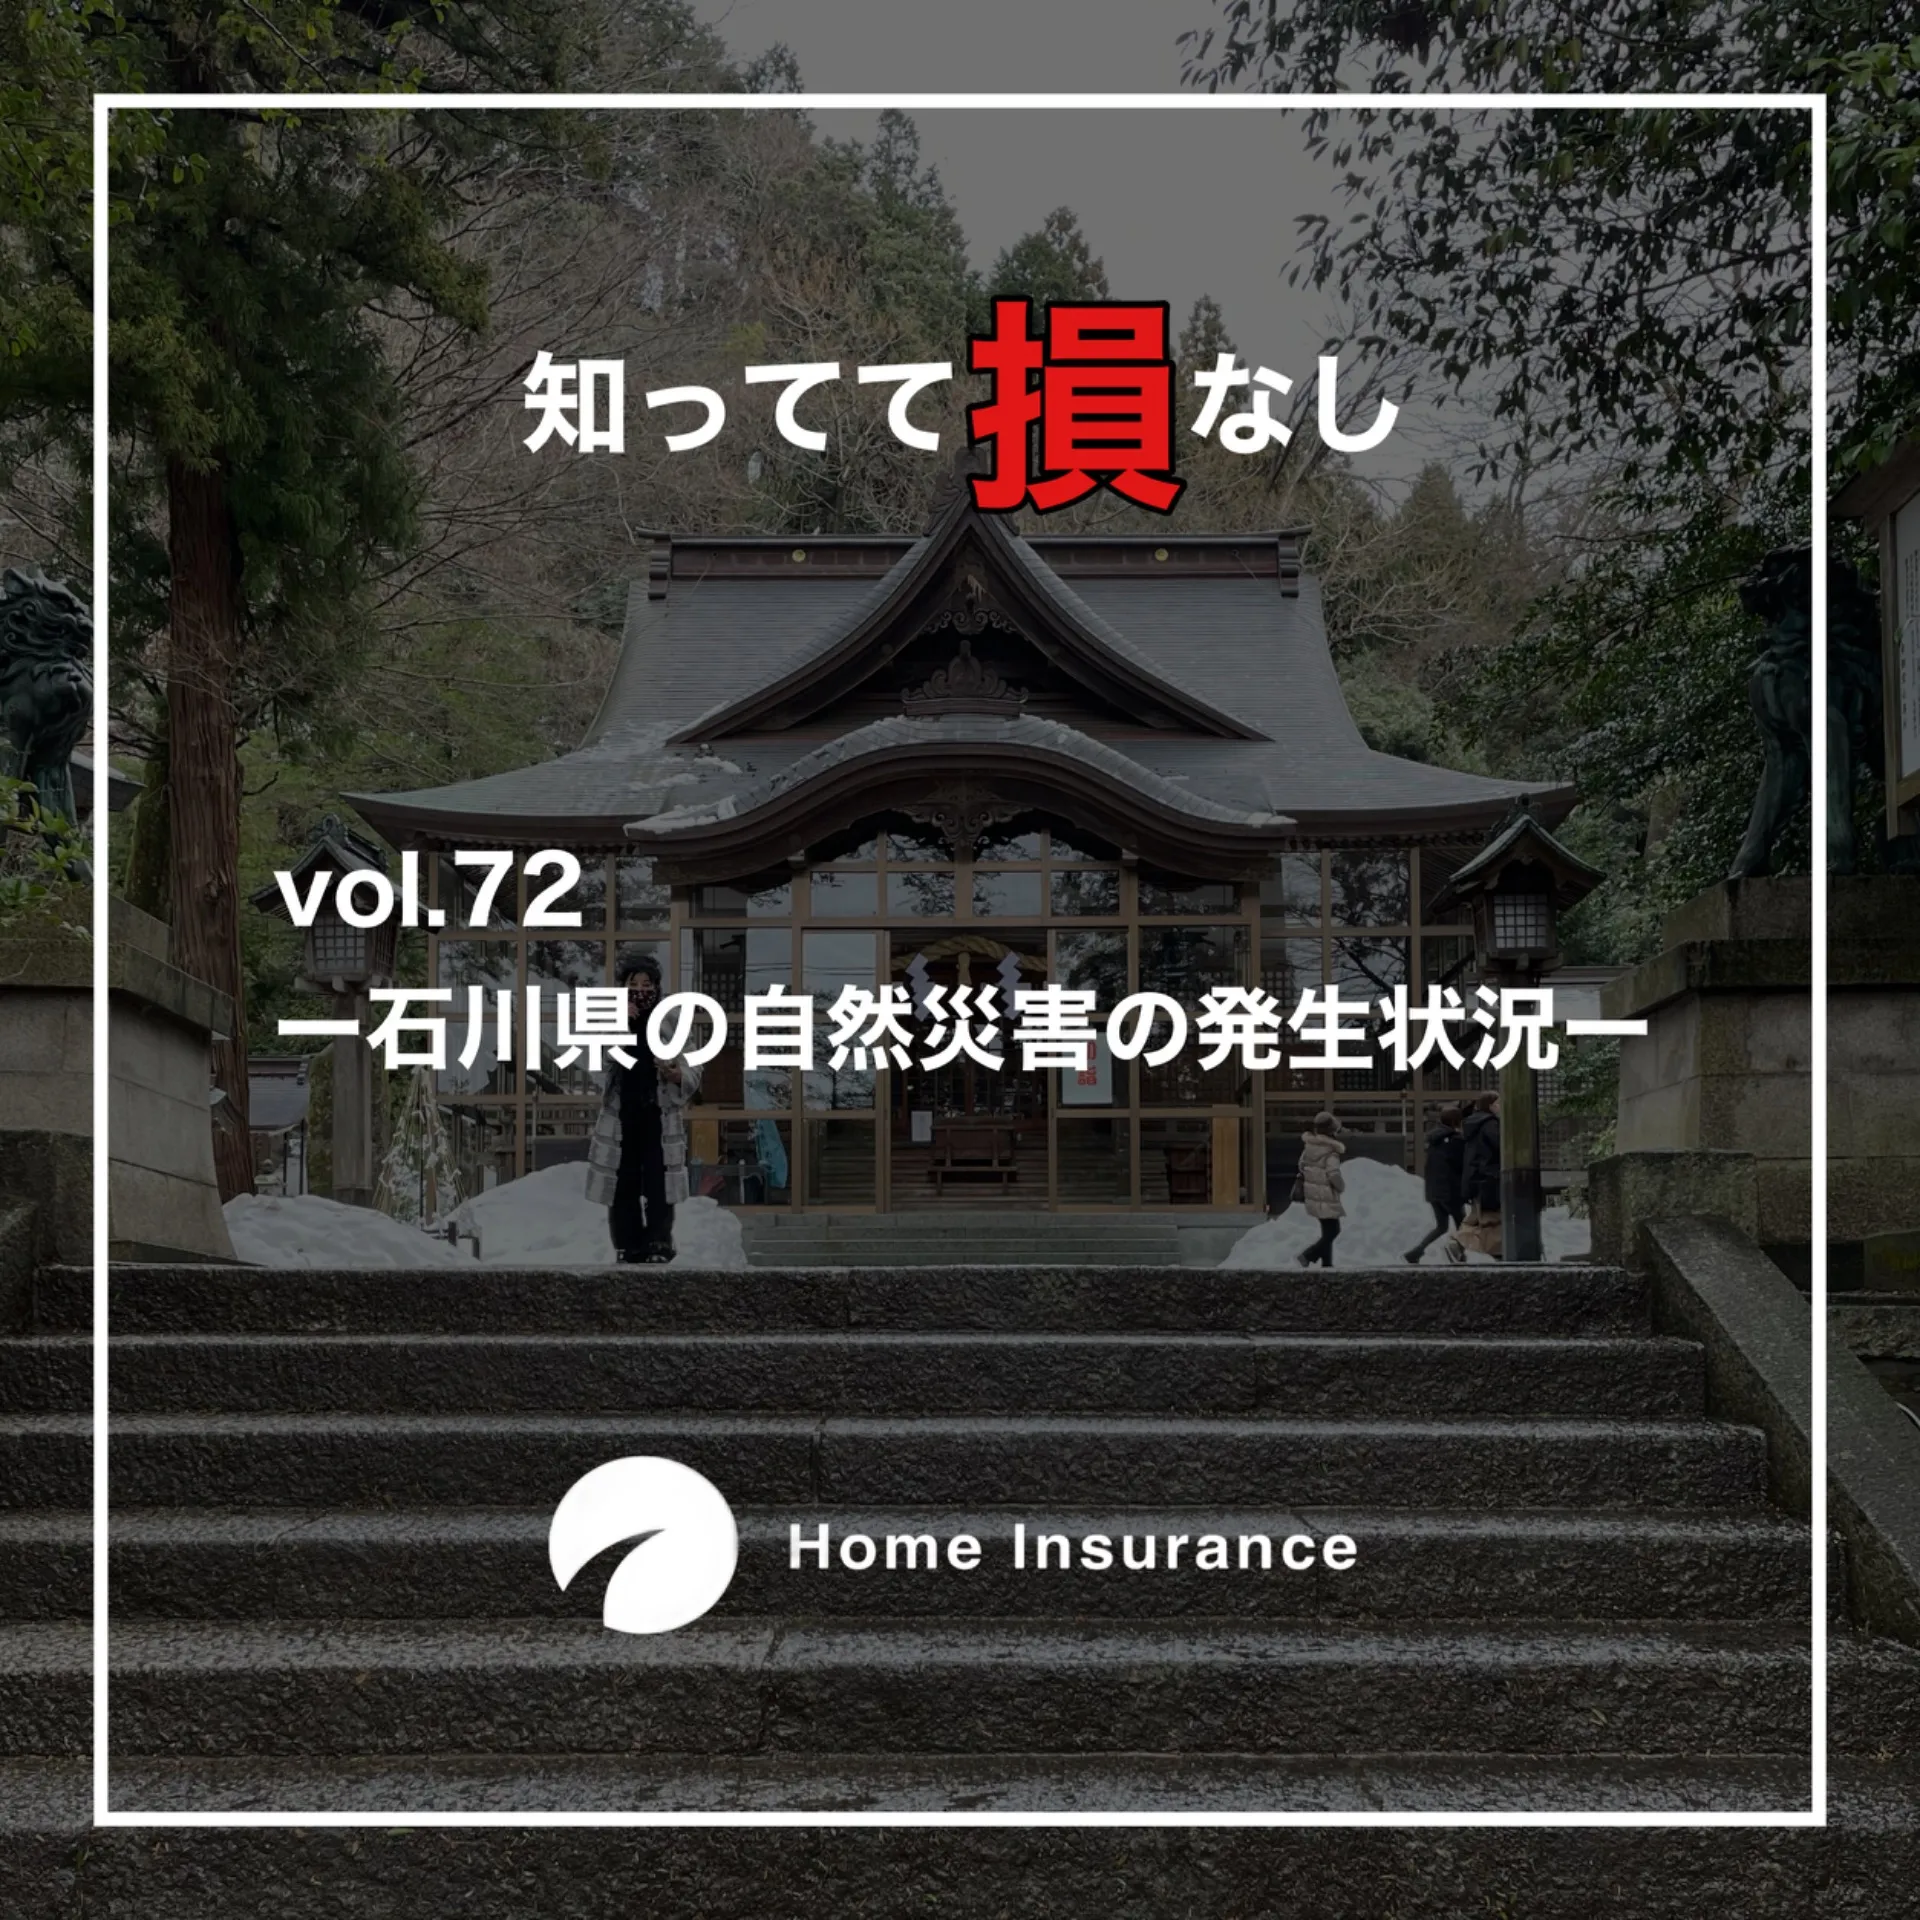 vol.72【石川県の自然災害の発生状況】火災保険申請サポート｜Home Insurance 